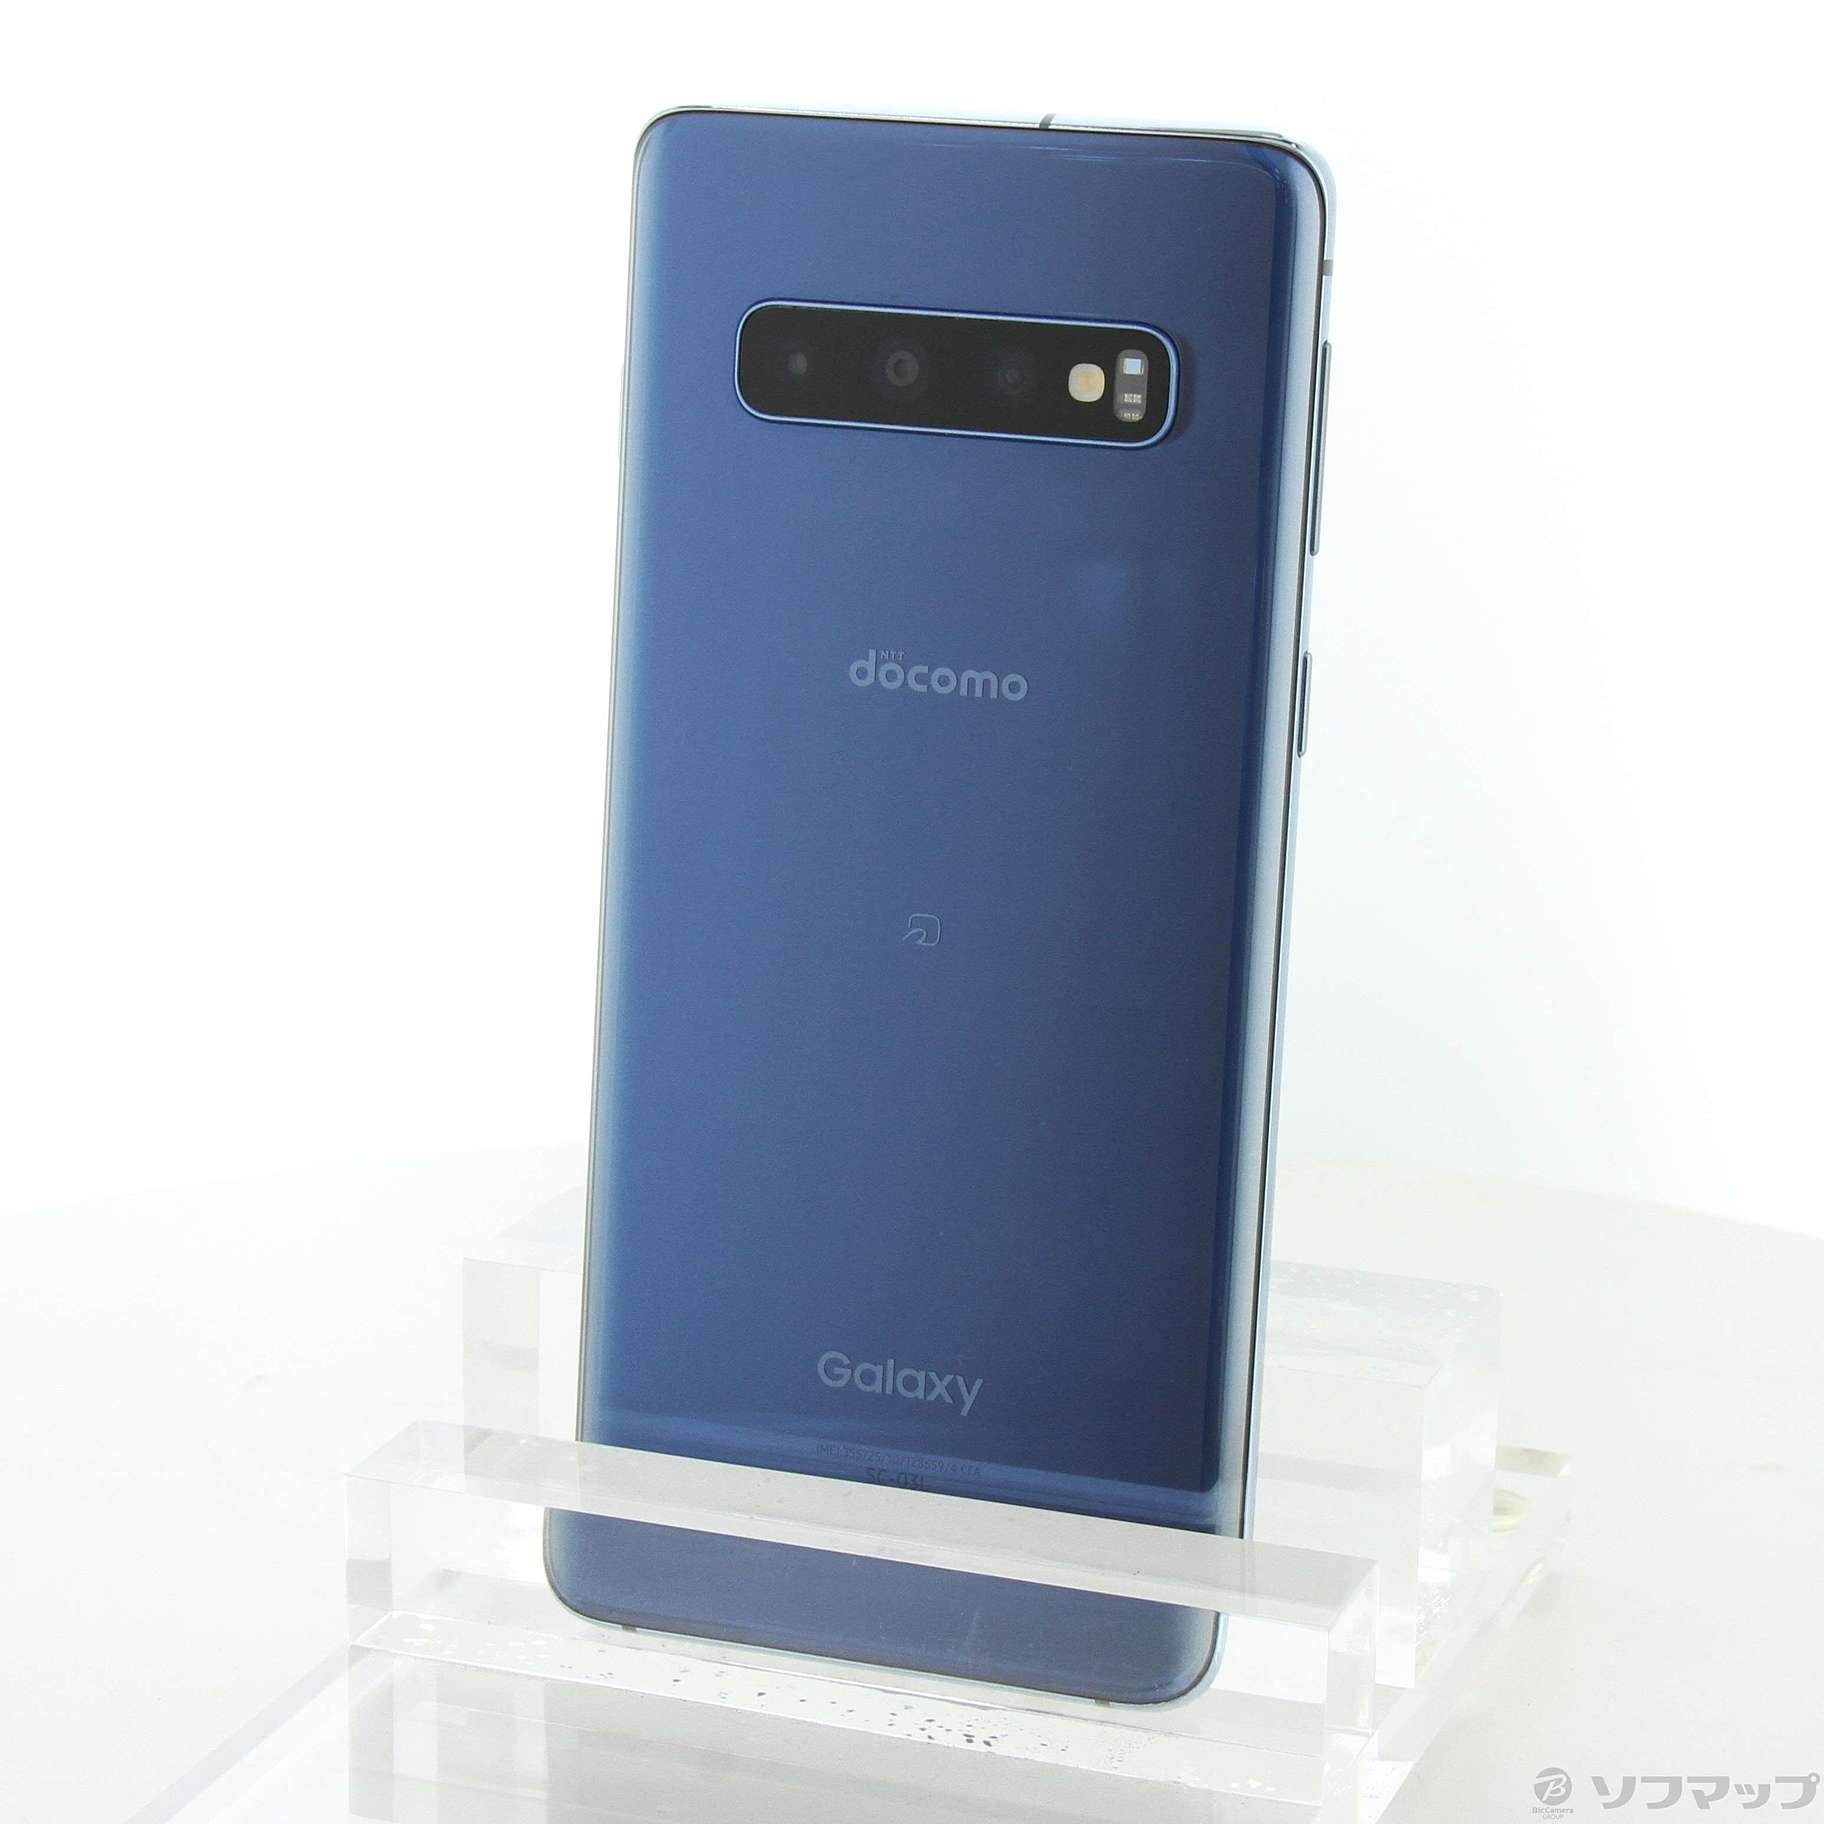 Galaxy S10 Prism Blue 128 GB docomo